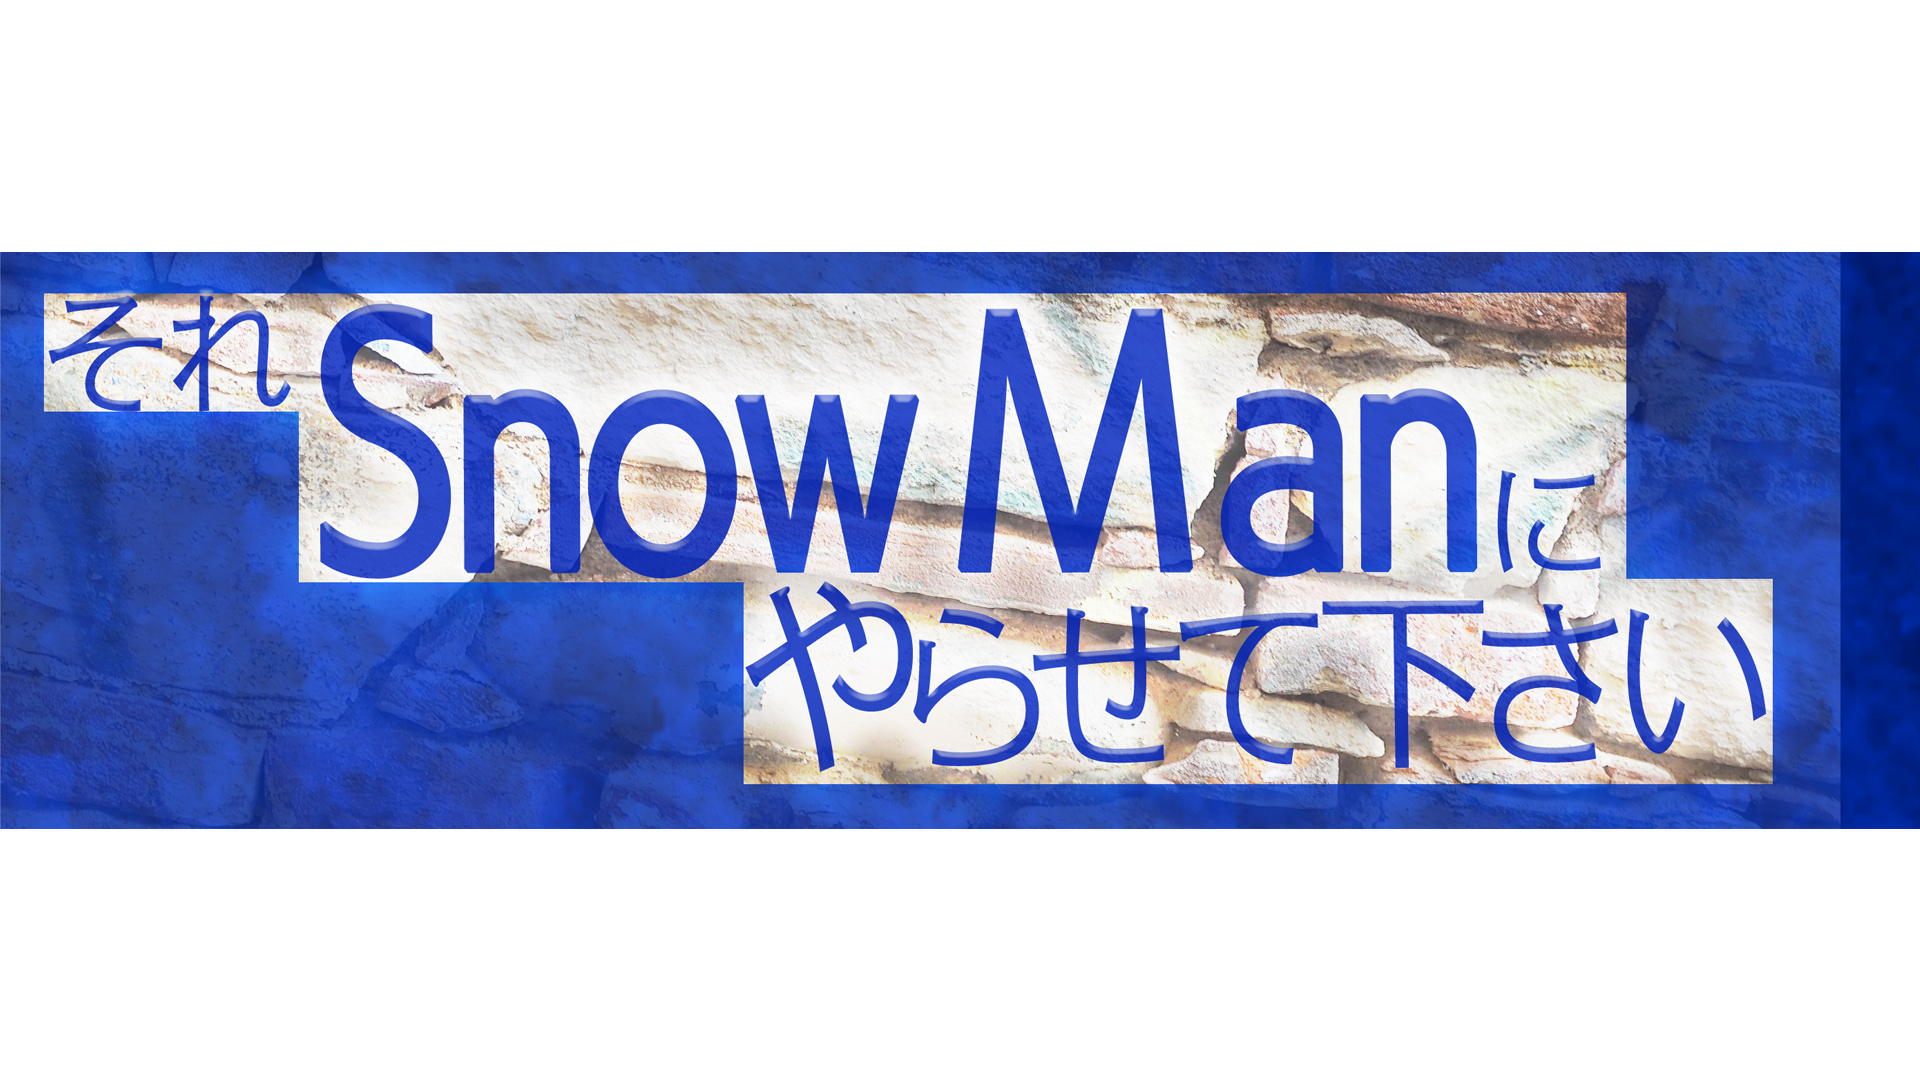 Snow Man初冠配信レギュラー番組 それsnow Man にやらせて下さい メンバー全員で初のキャンプロケ プレミアム プラットフォーム ジャパンのプレスリリース